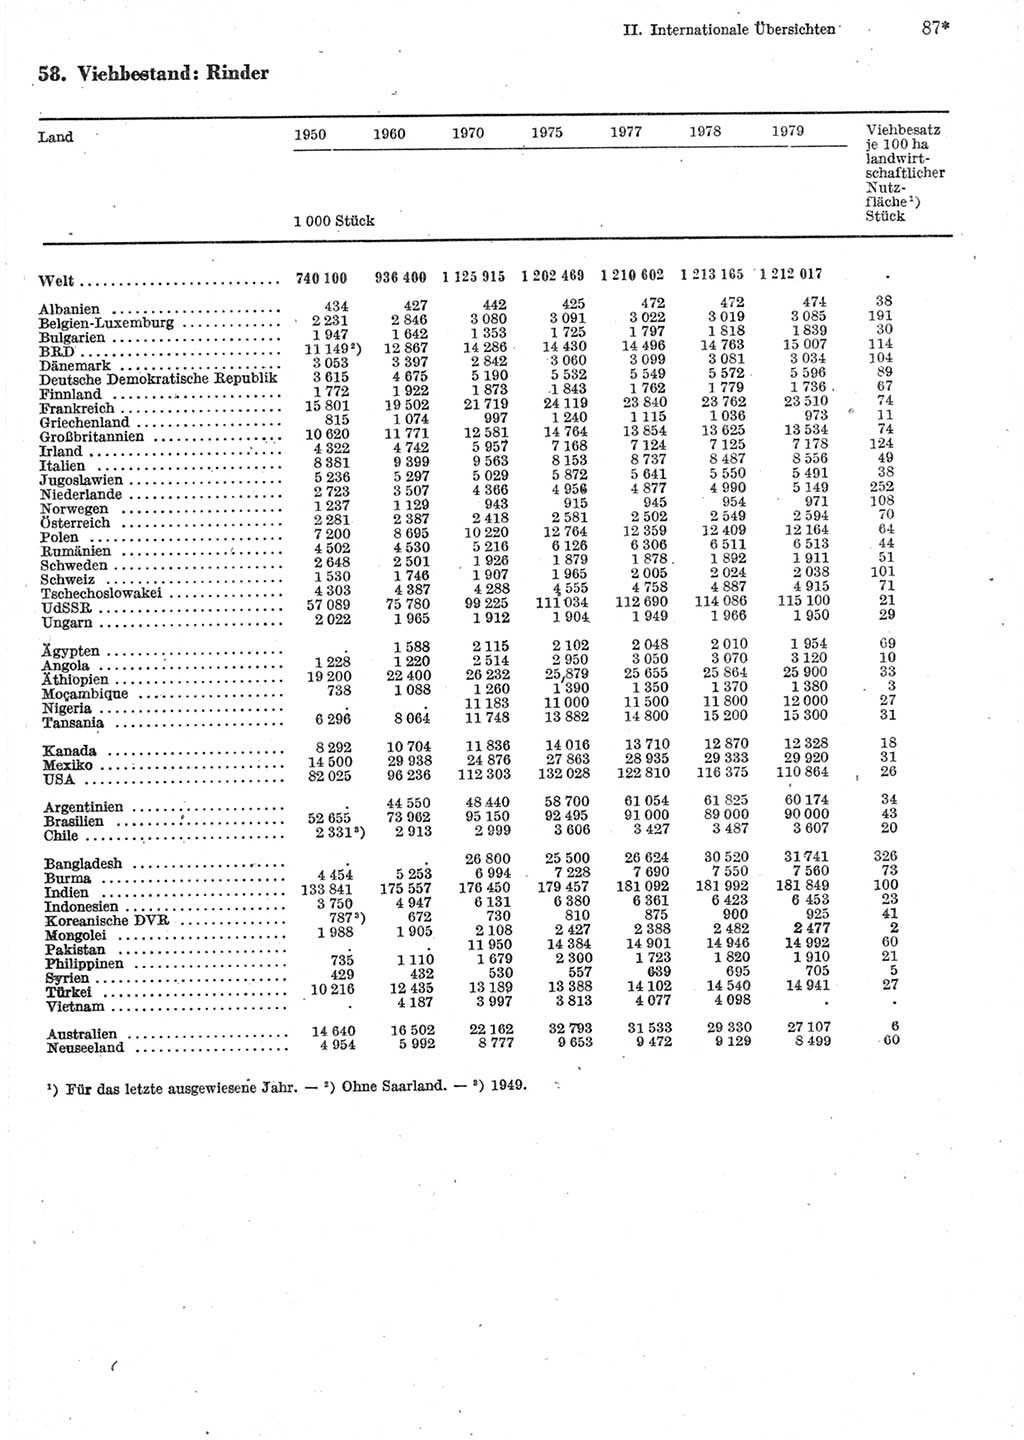 Statistisches Jahrbuch der Deutschen Demokratischen Republik (DDR) 1981, Seite 87 (Stat. Jb. DDR 1981, S. 87)